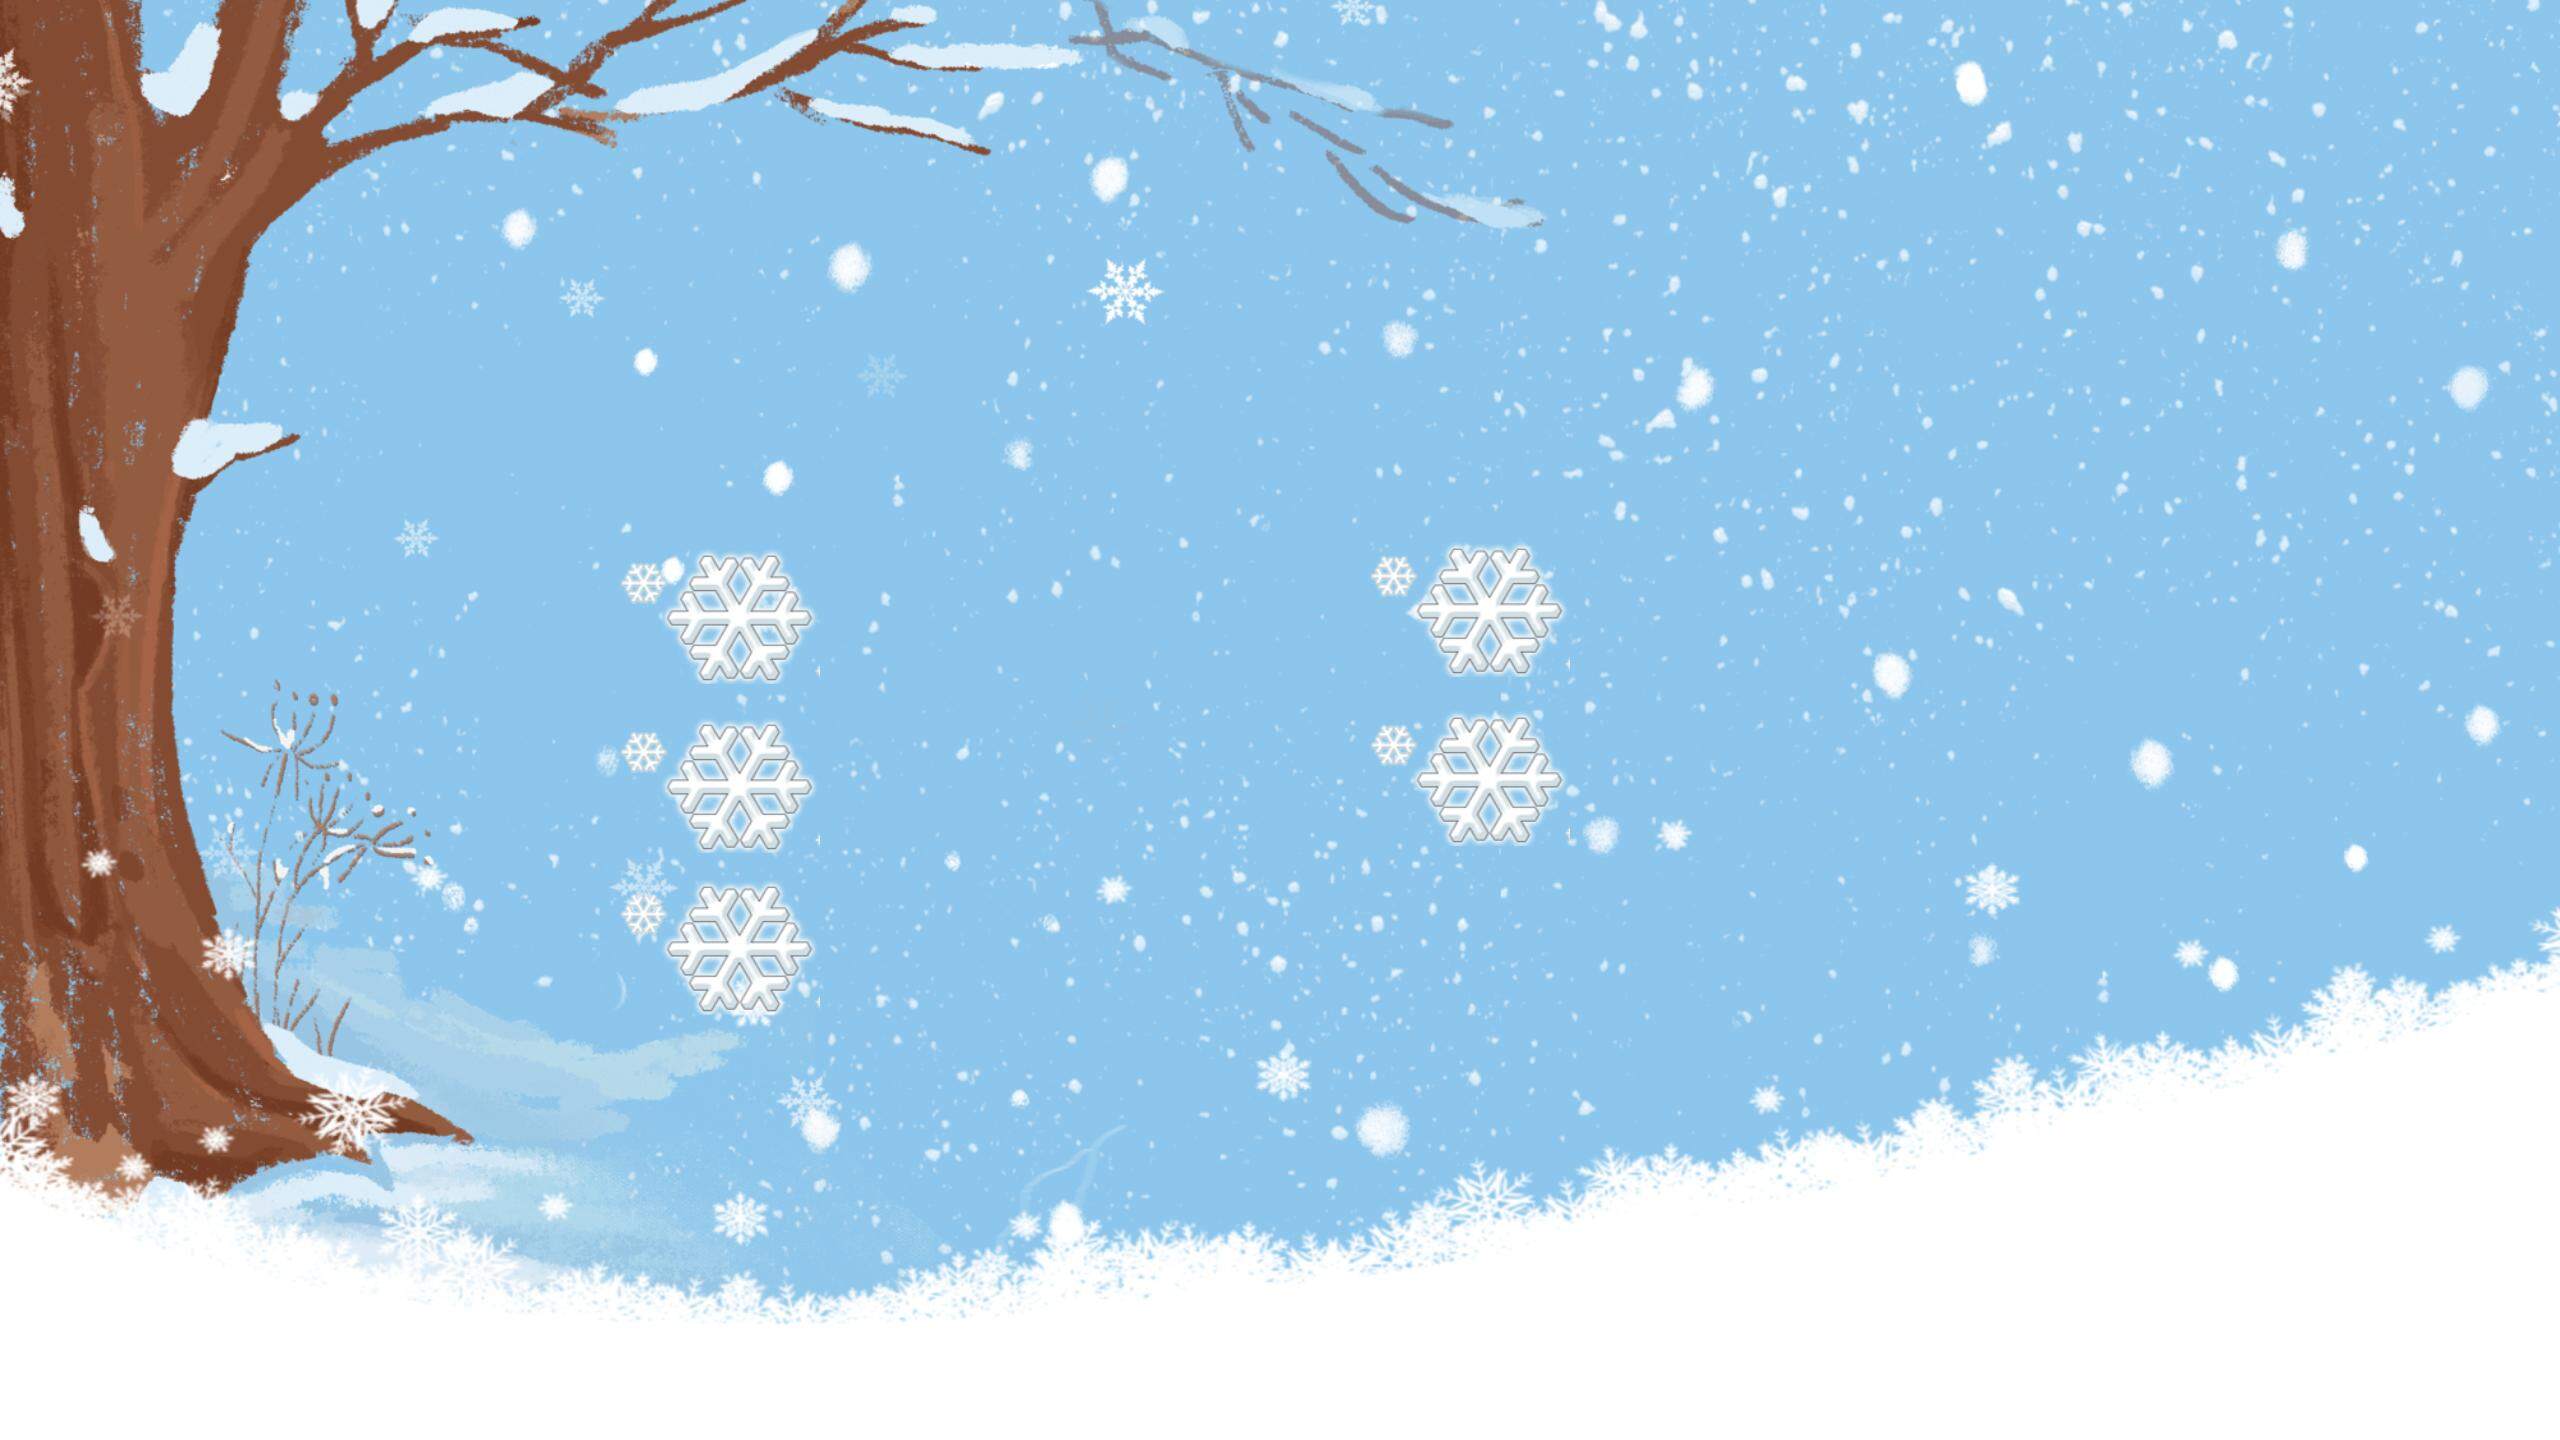 四张卡通冬天雪景PPT背景图片